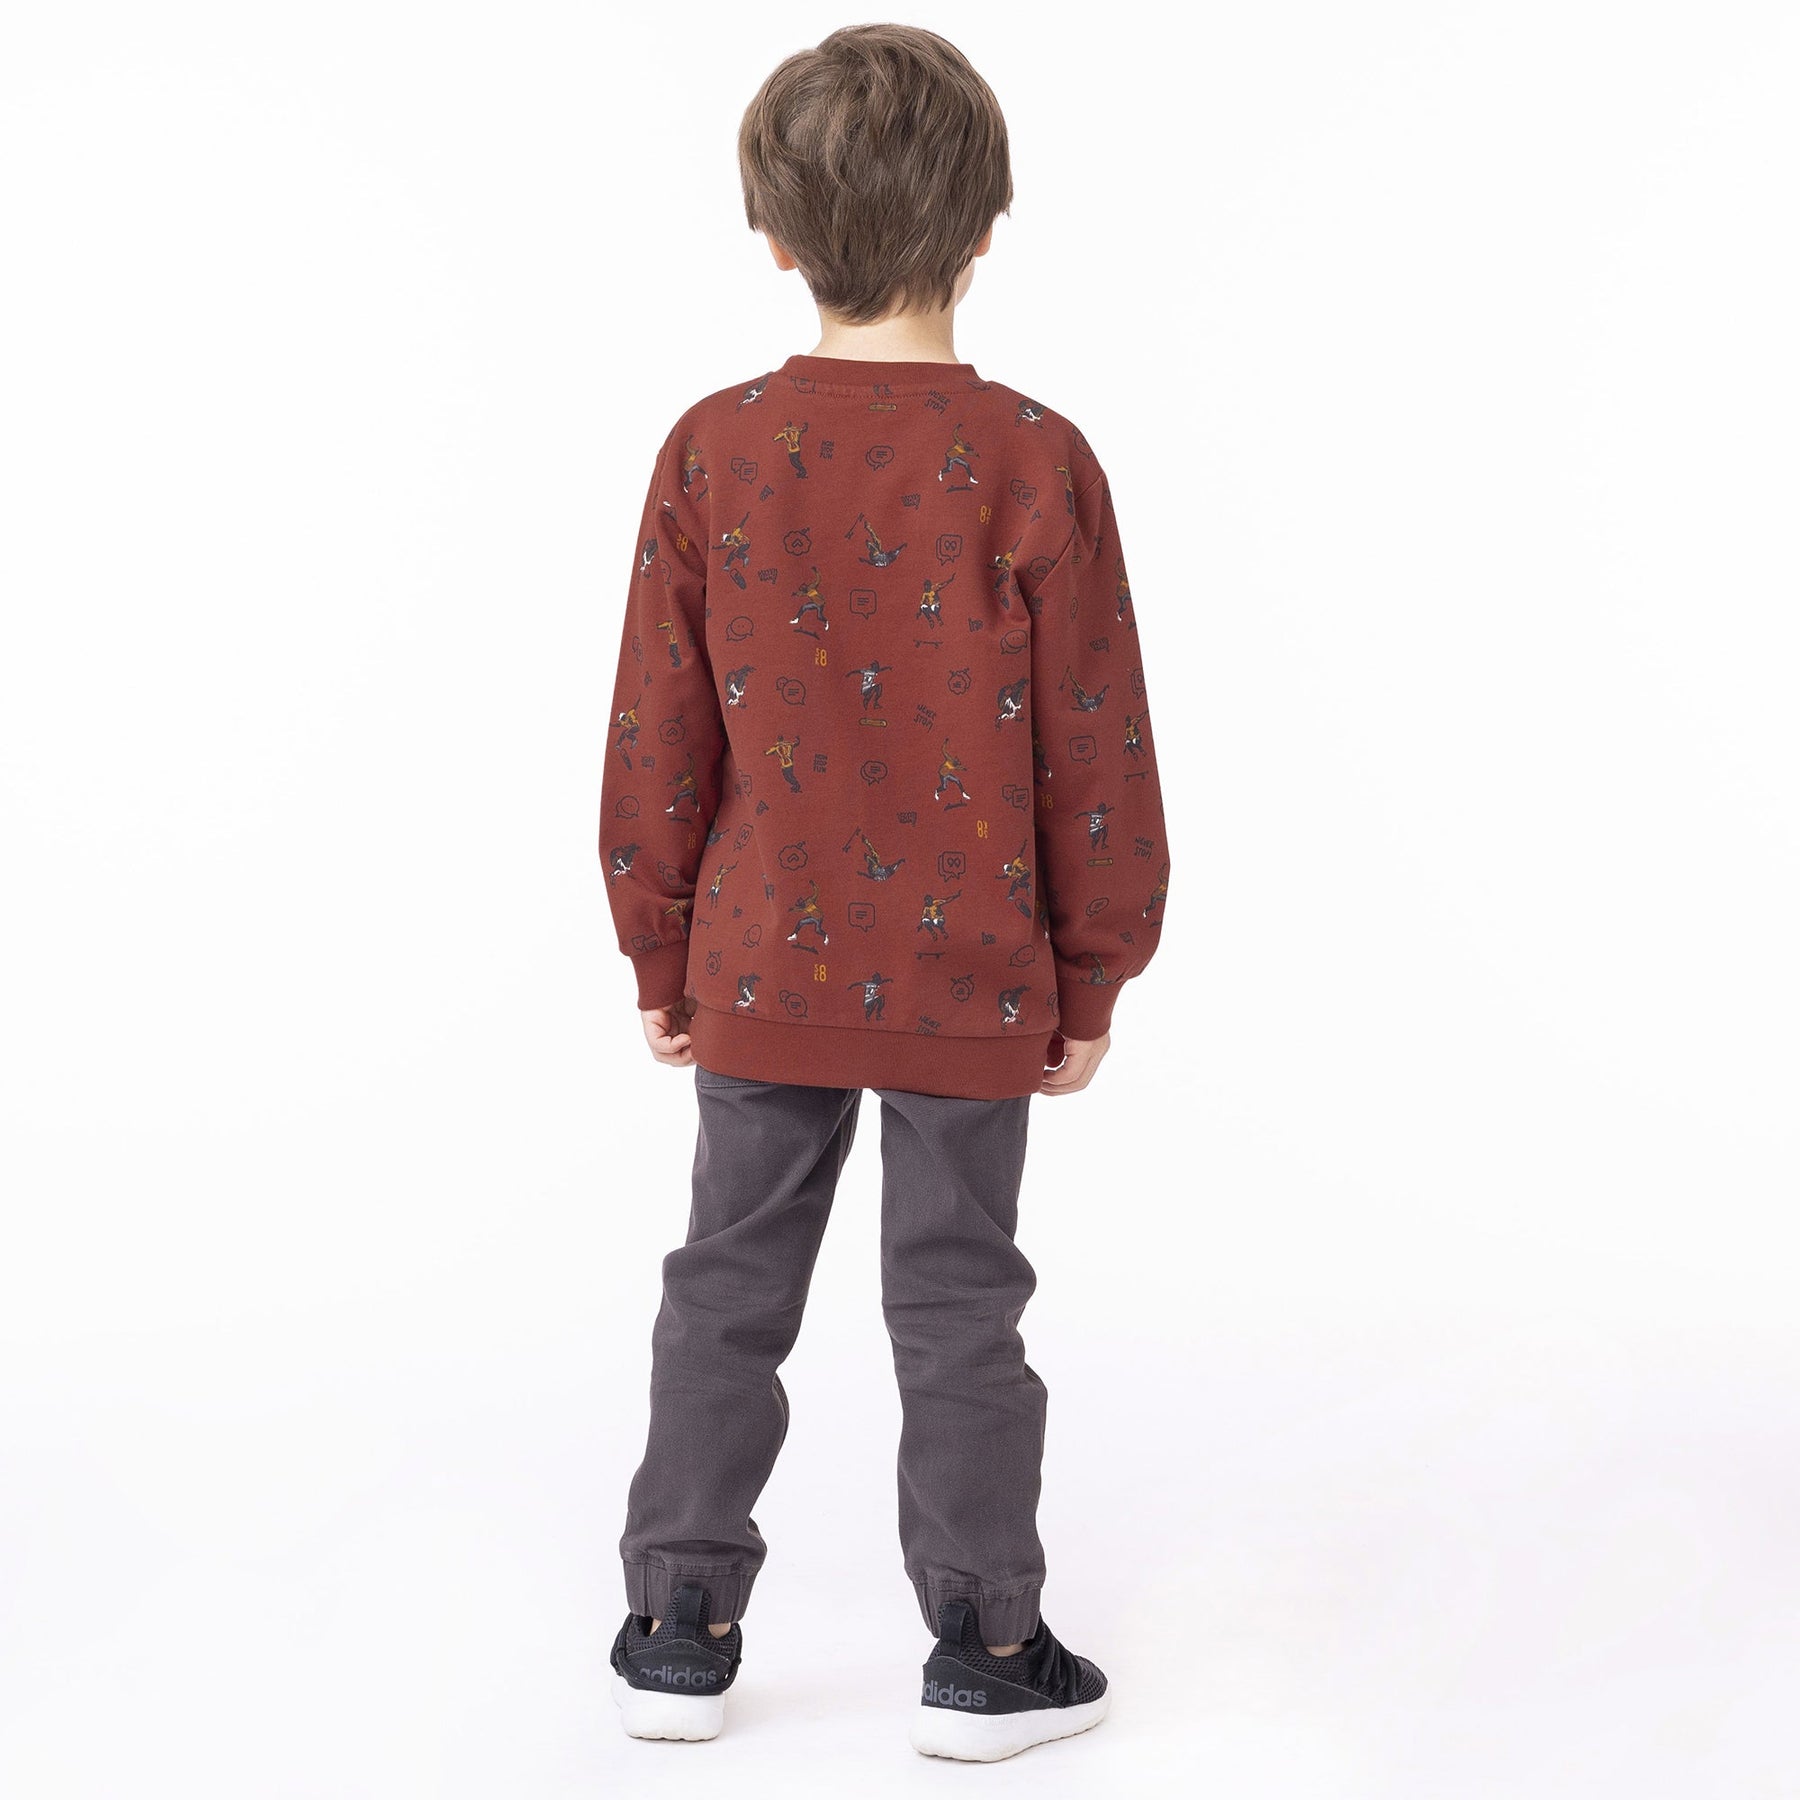 Chandail manches longues pour enfant garçon par Nanö | F2303-08 Rouge | Boutique Flos, vêtements mode pour bébés et enfants